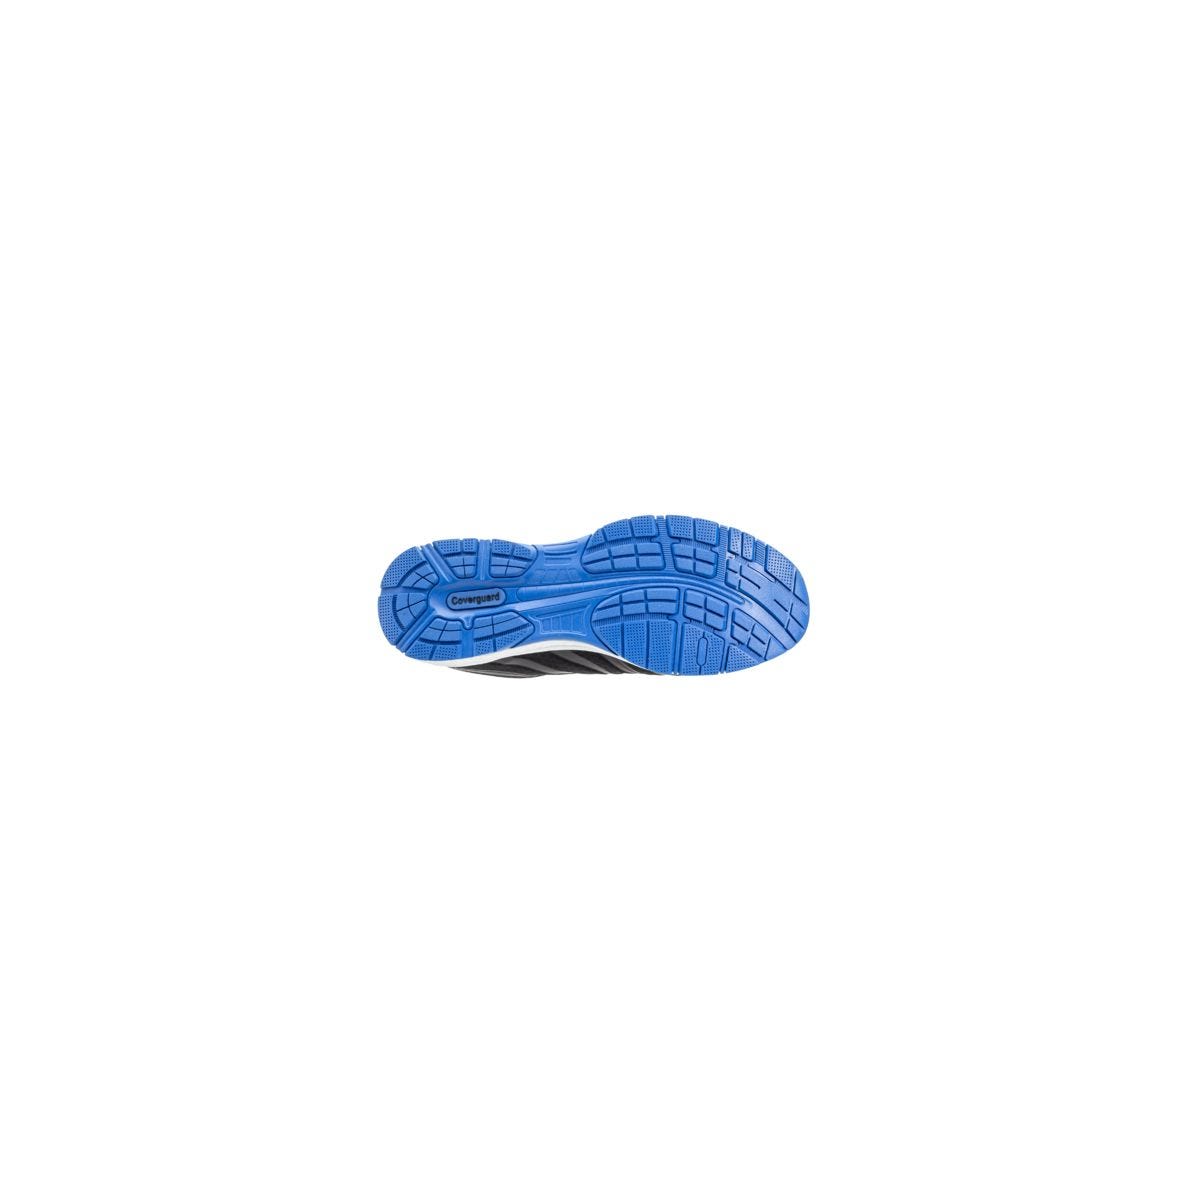 Chaussures de sécurité S1P GALAXITE Basse Maille Noir Bleu ESD - COVERGUARD - Taille 44 1